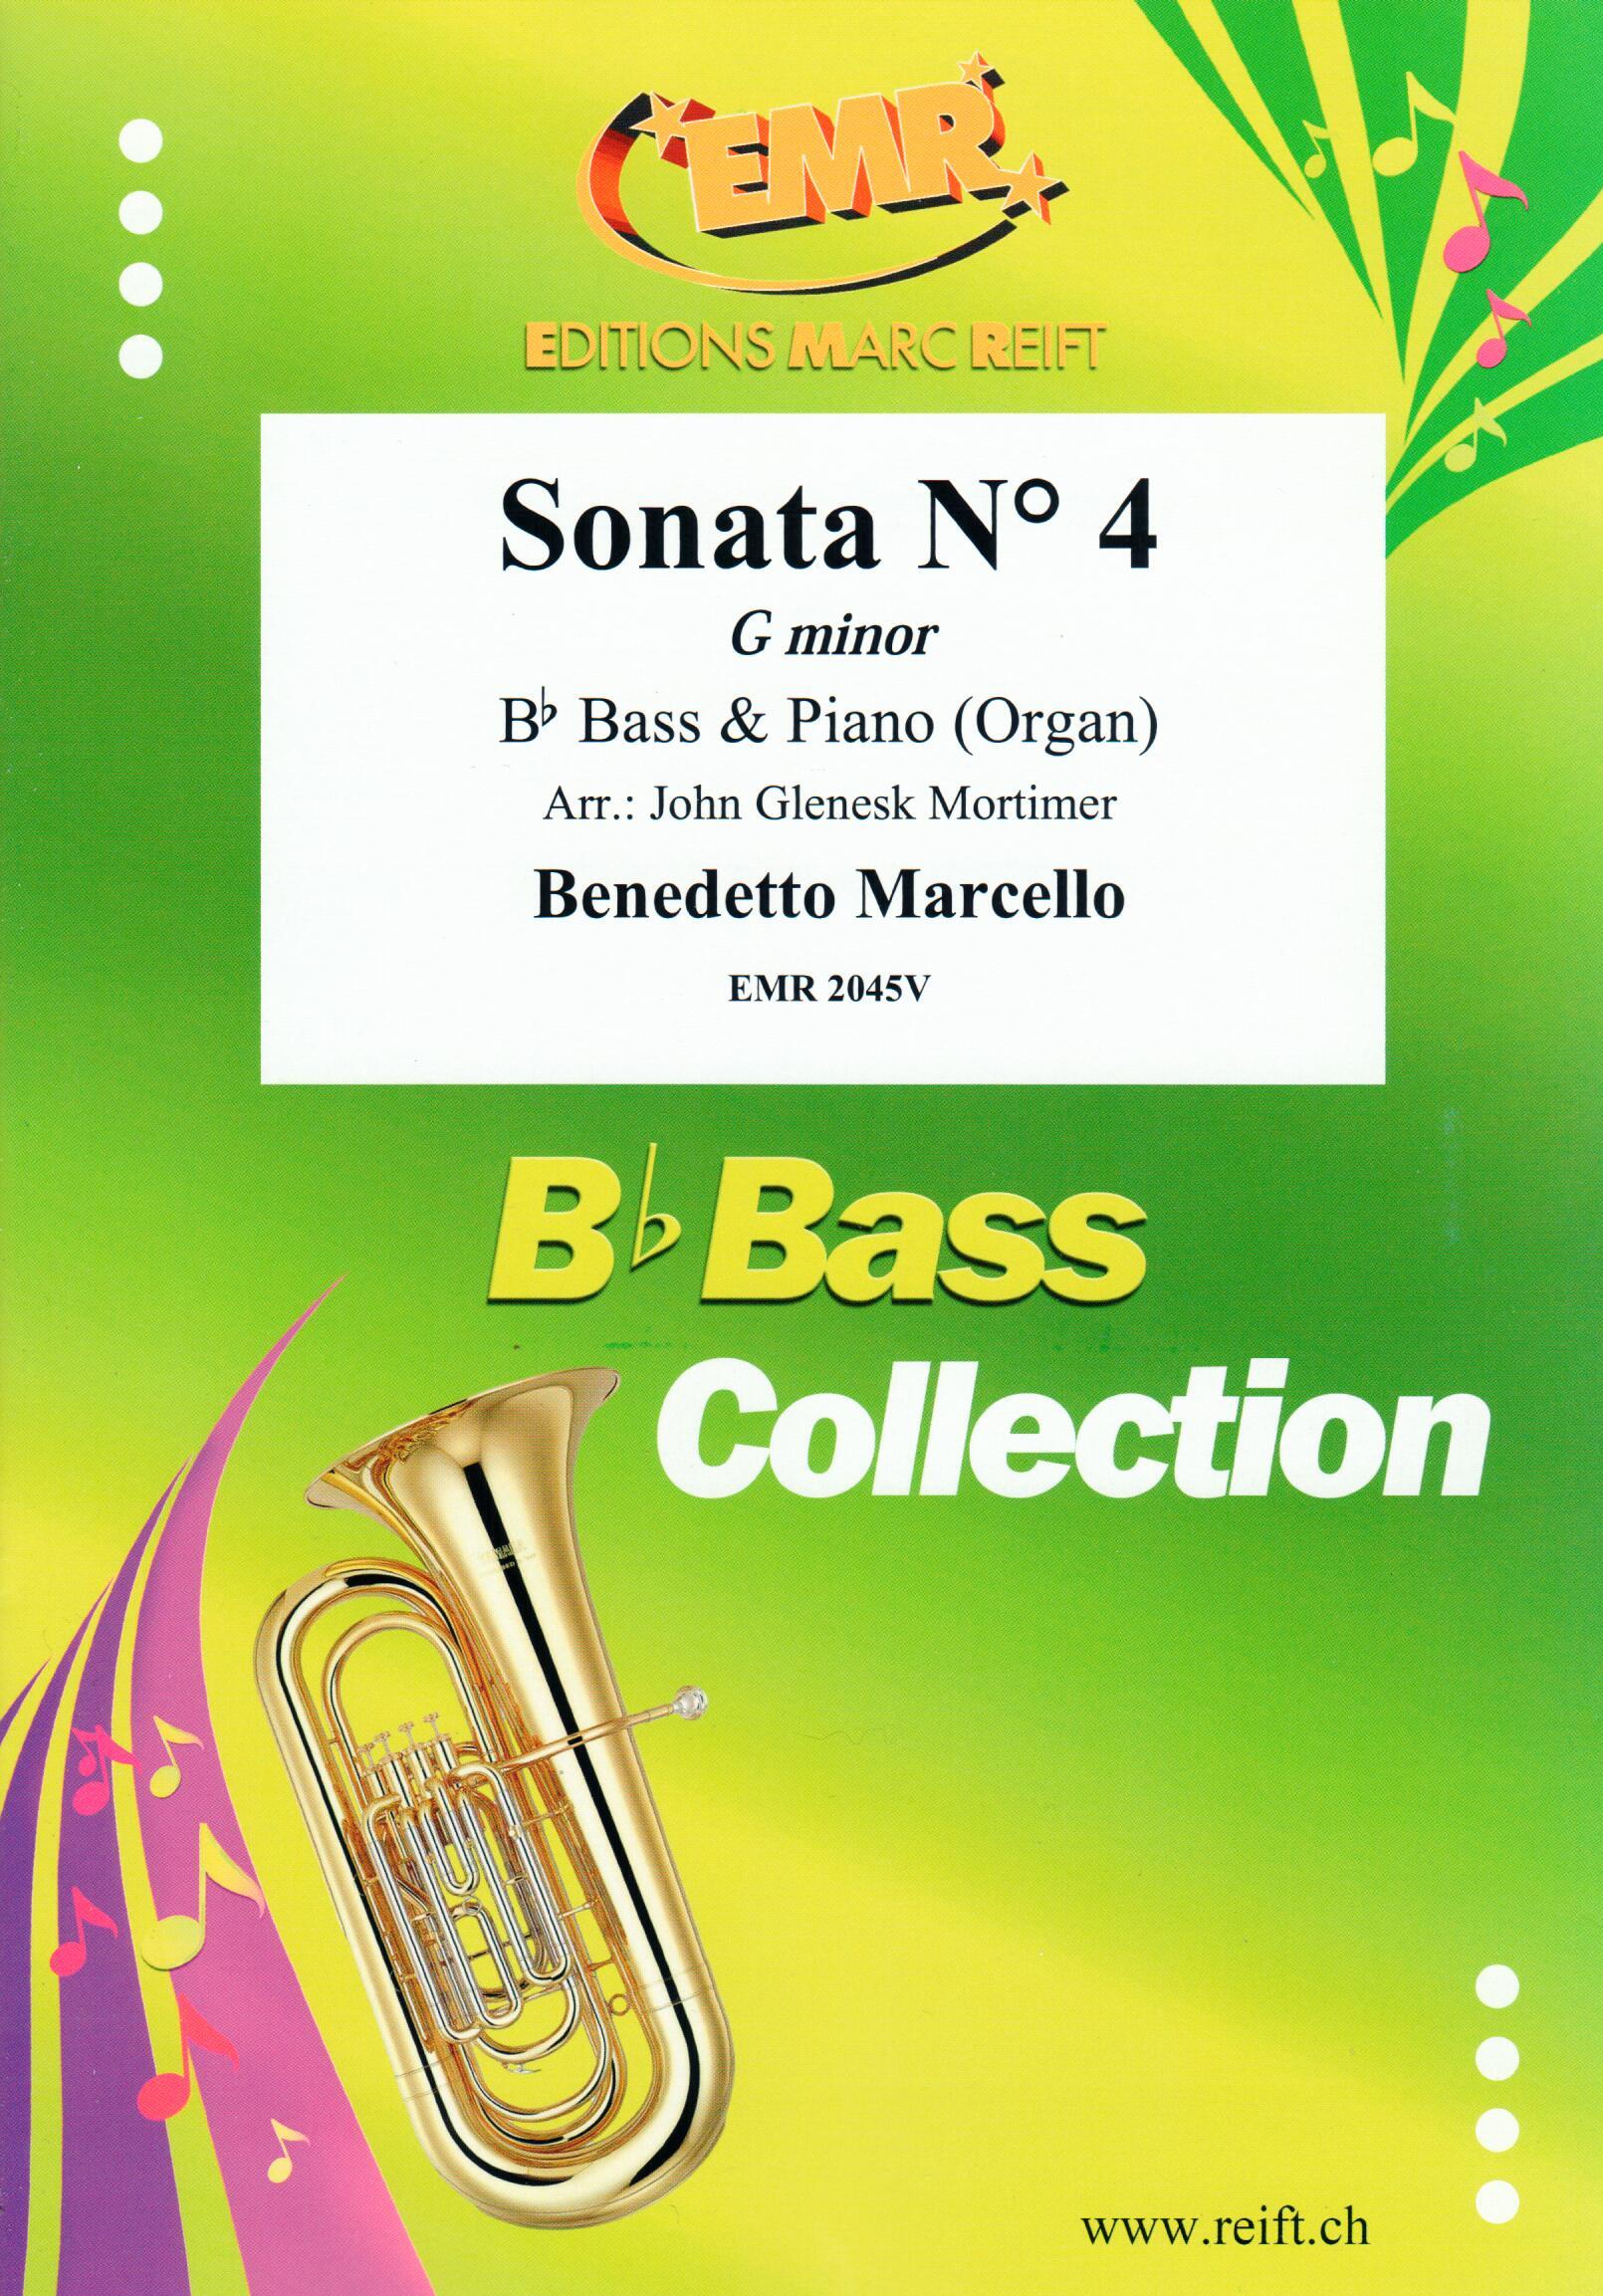 SONATA N° 4 IN G MINOR, SOLOS - E♭. Bass